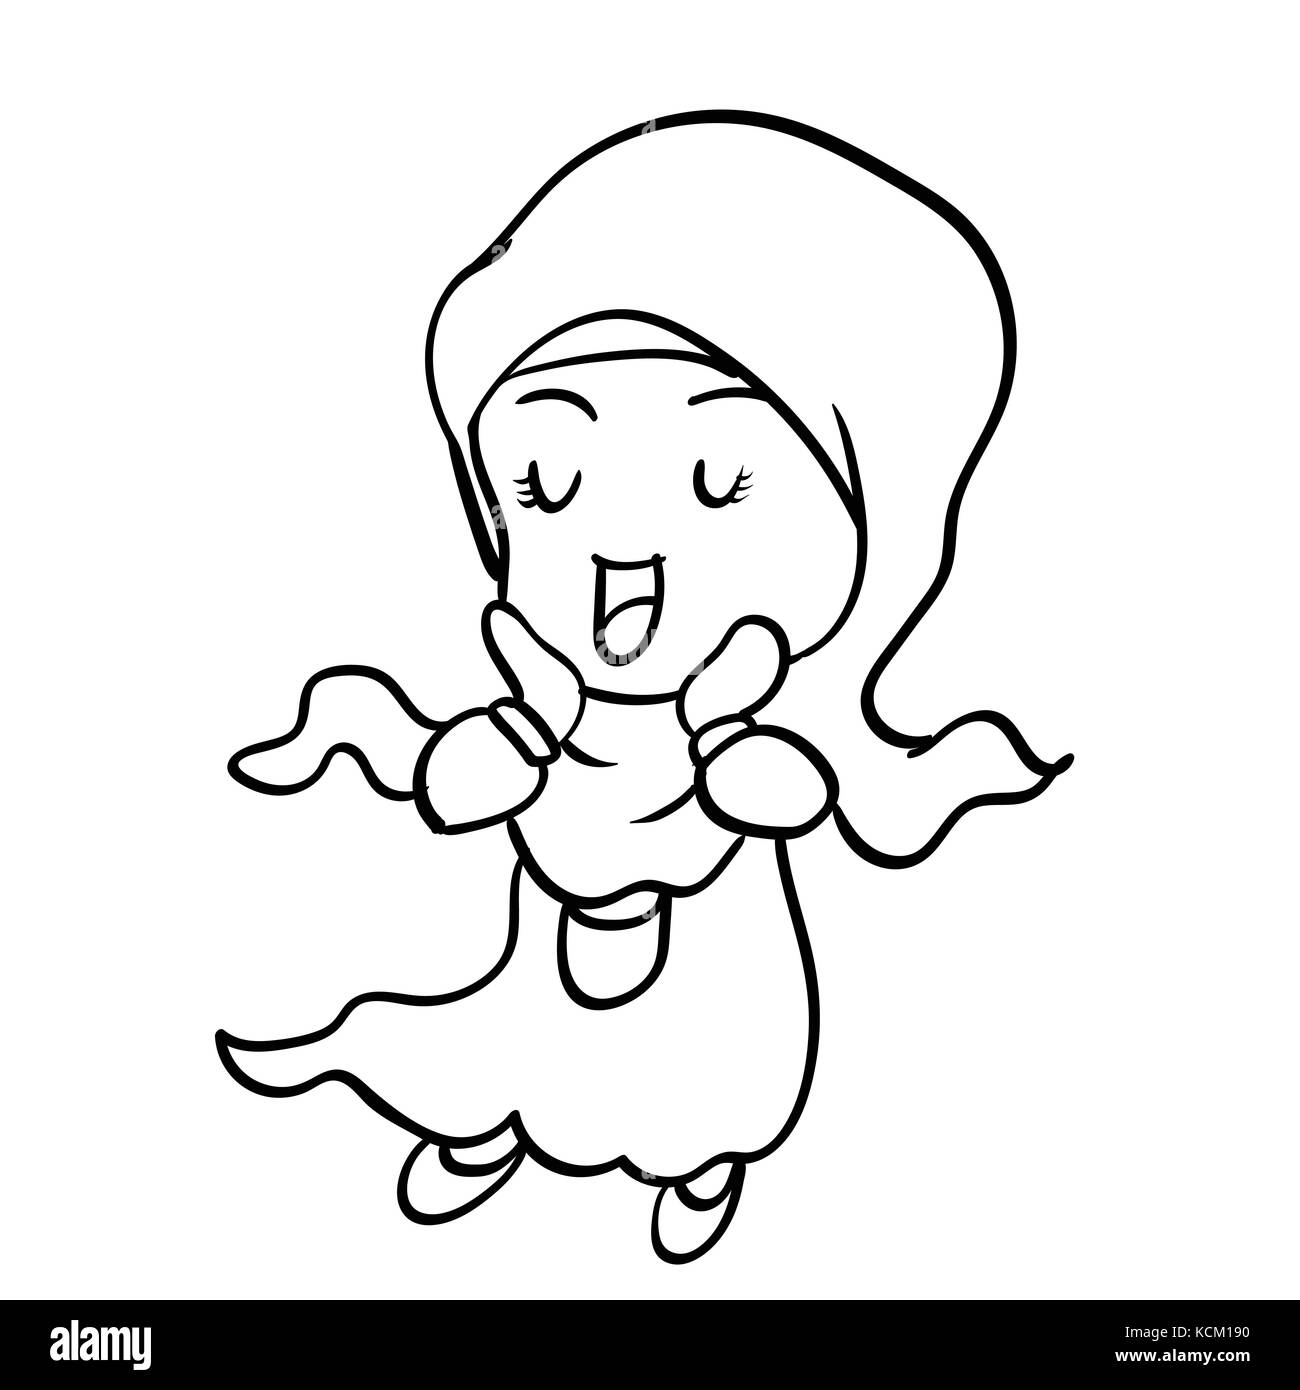 Dessin à La Main De La Jeune Fille Musulmane Cute Cartoon